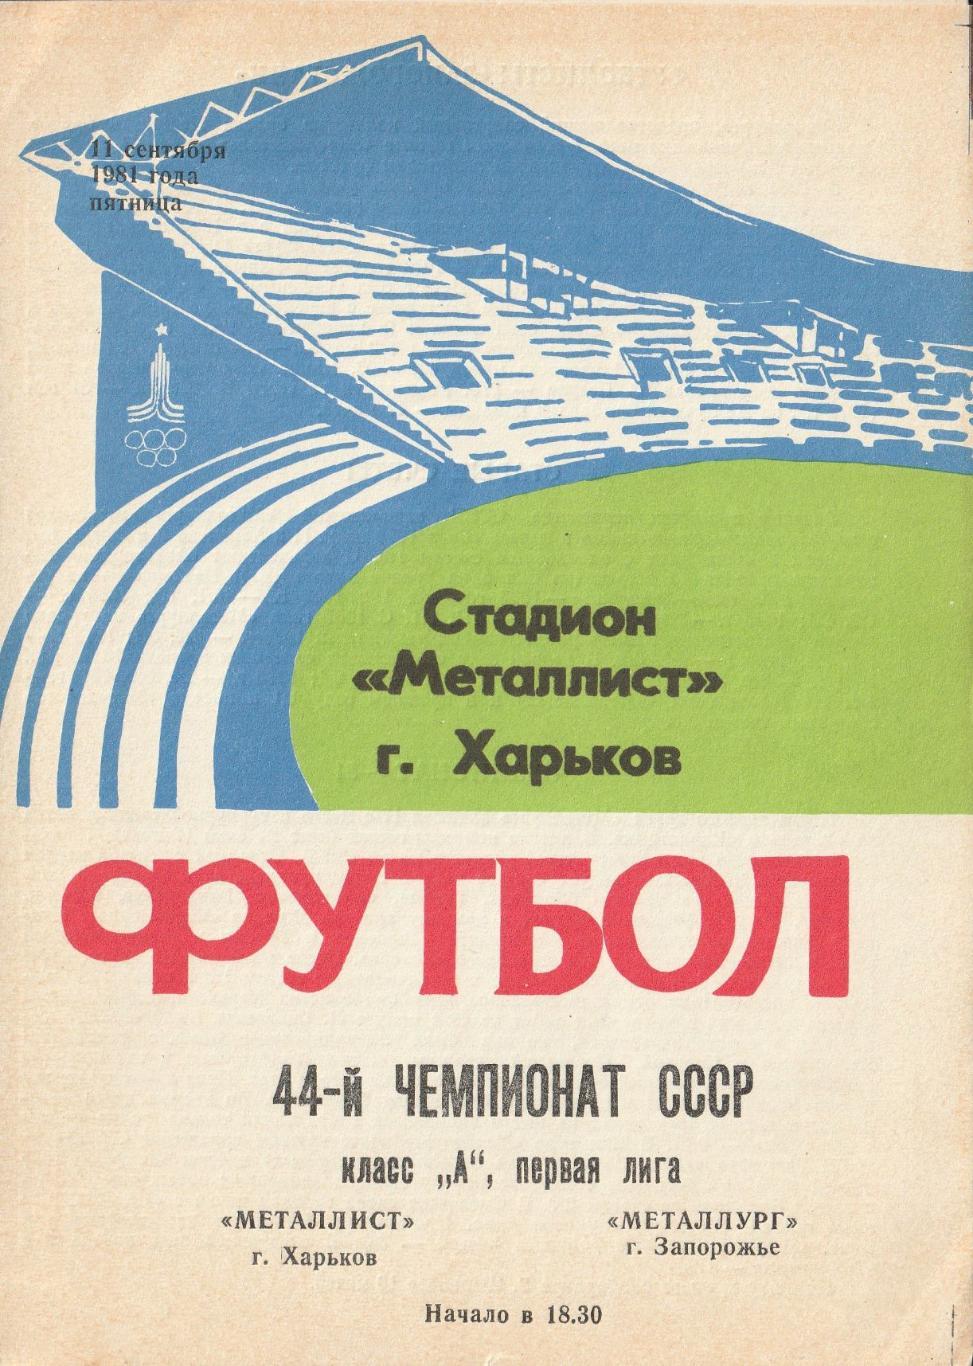 Металлист Харьков - Металлург Запорожье 11.09.1981